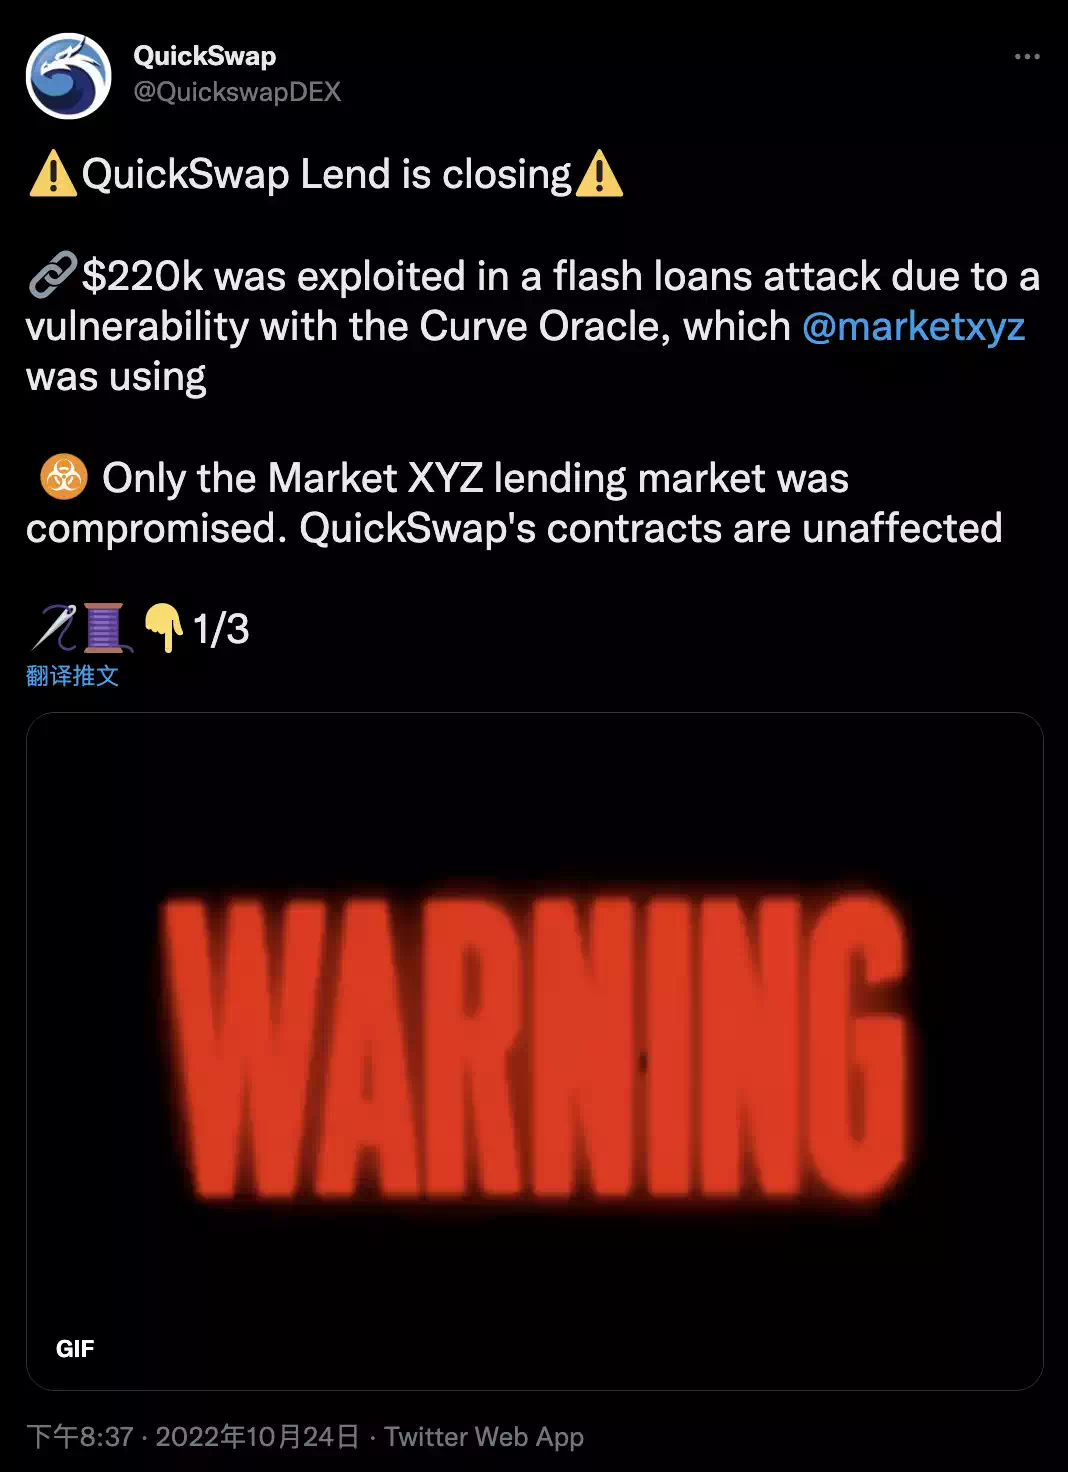 借贷市场QuickSwap Lend因闪电贷攻击损失22万美元，将暂时关闭